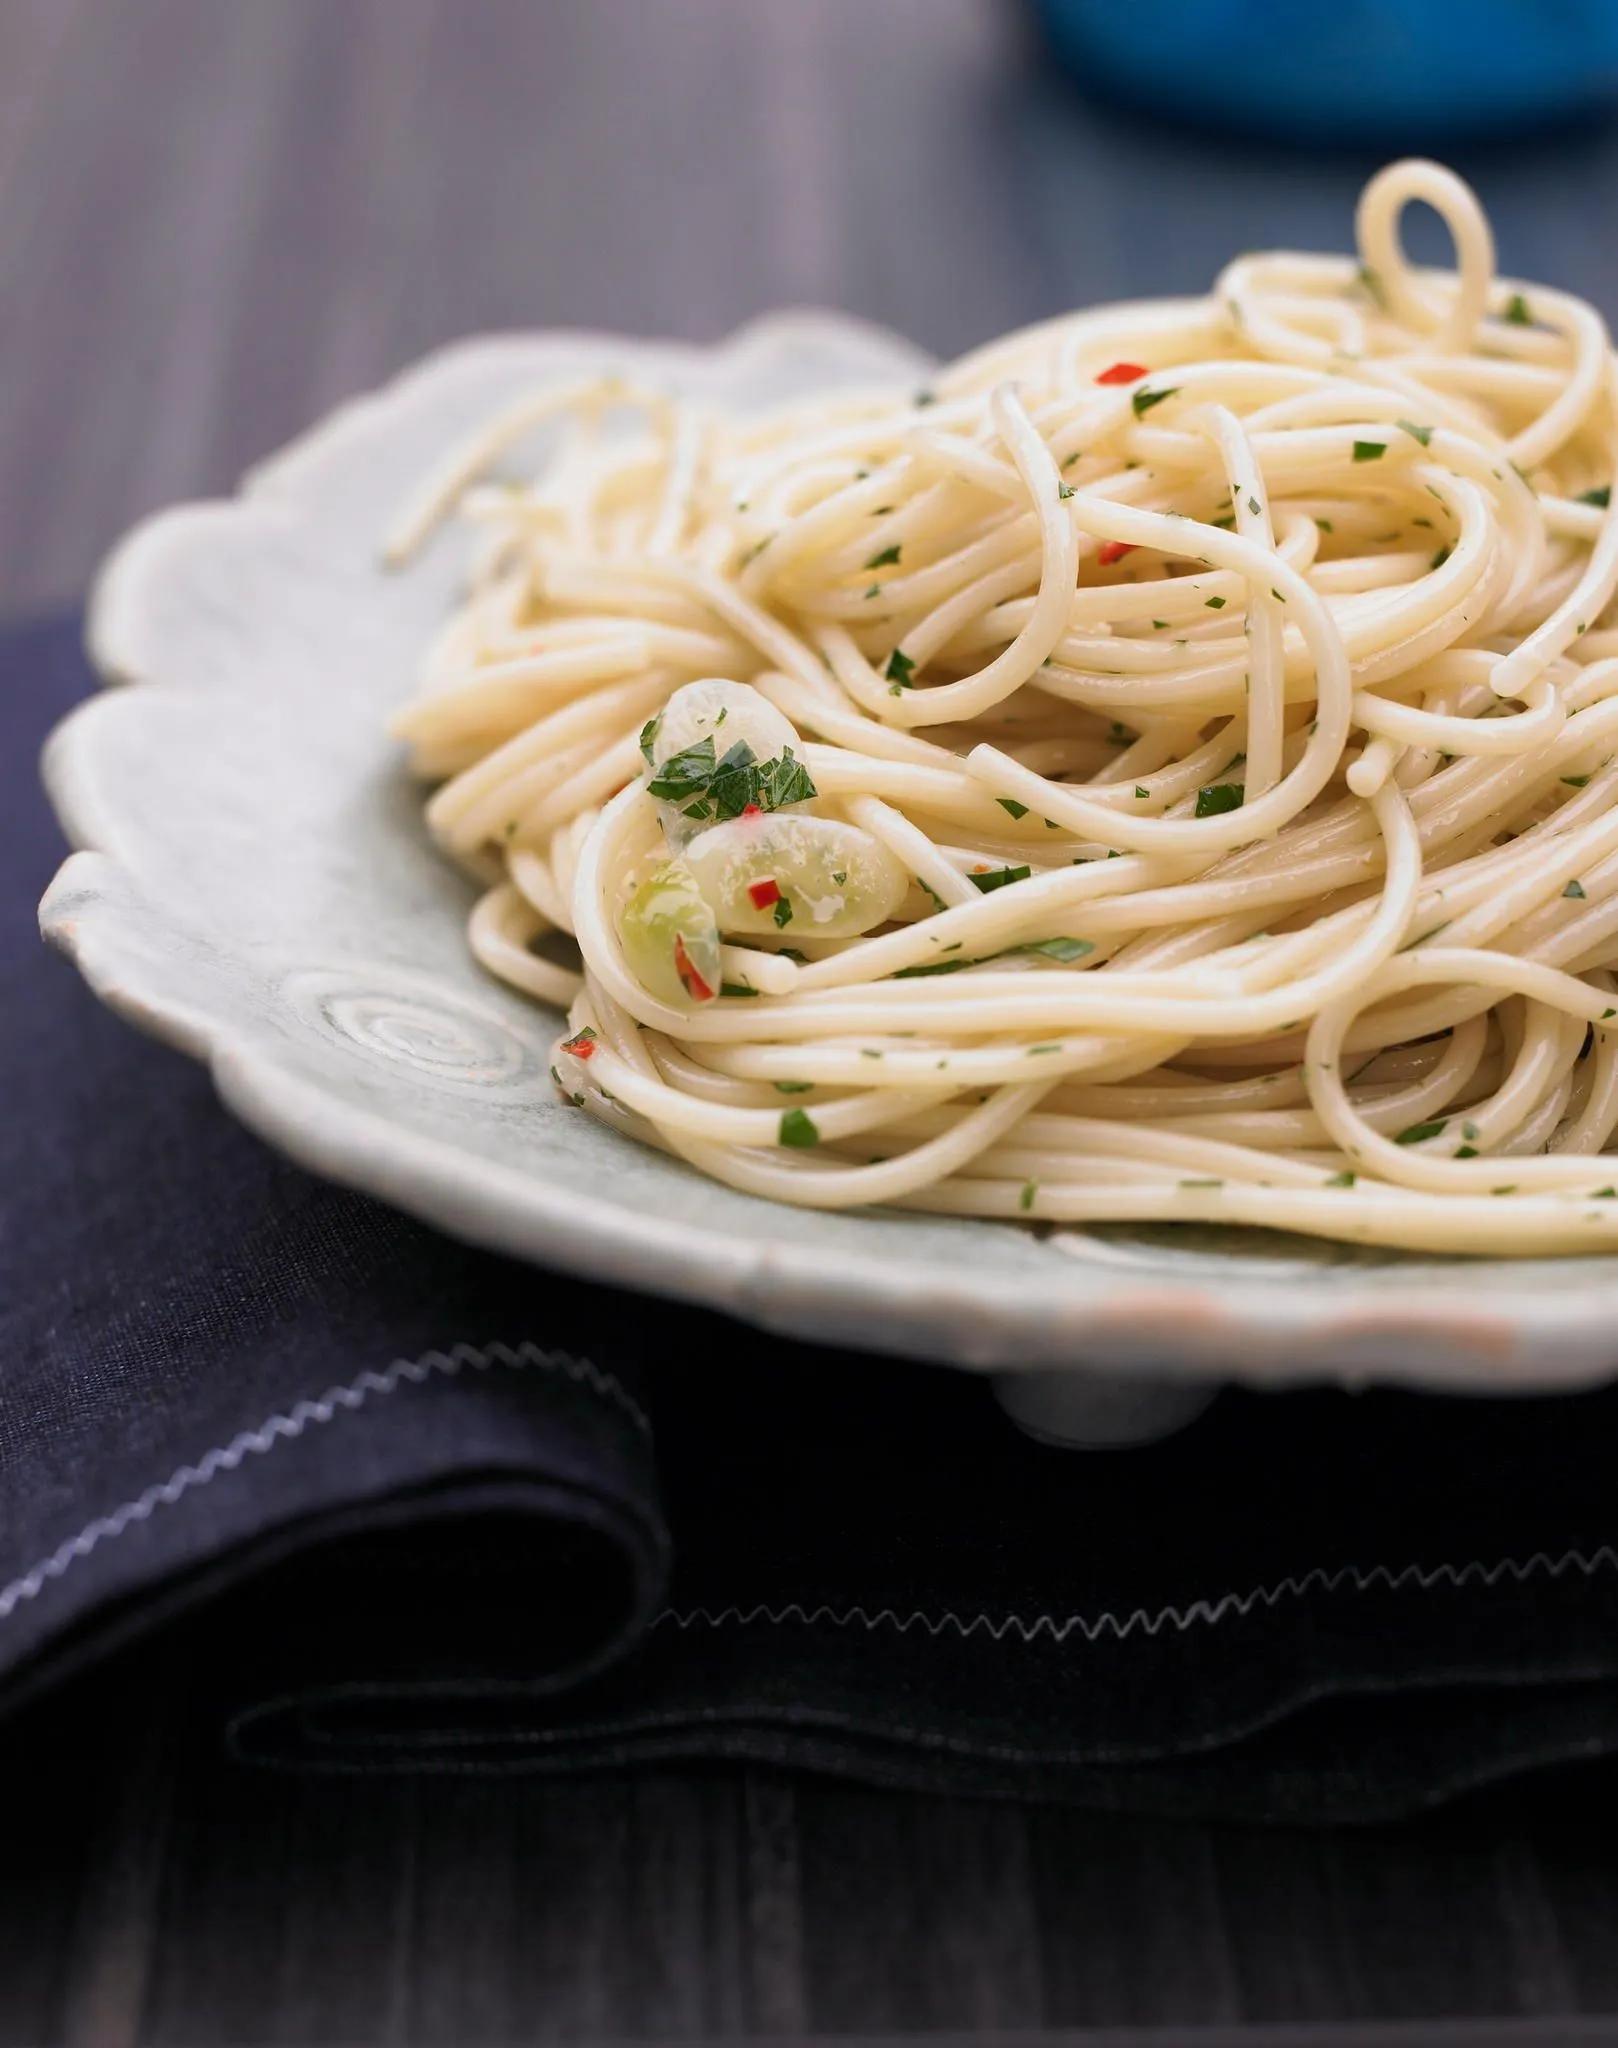 Spaghetti aglio e olio (mit Öl und Knoblauch) sind echt sizilianisch ...